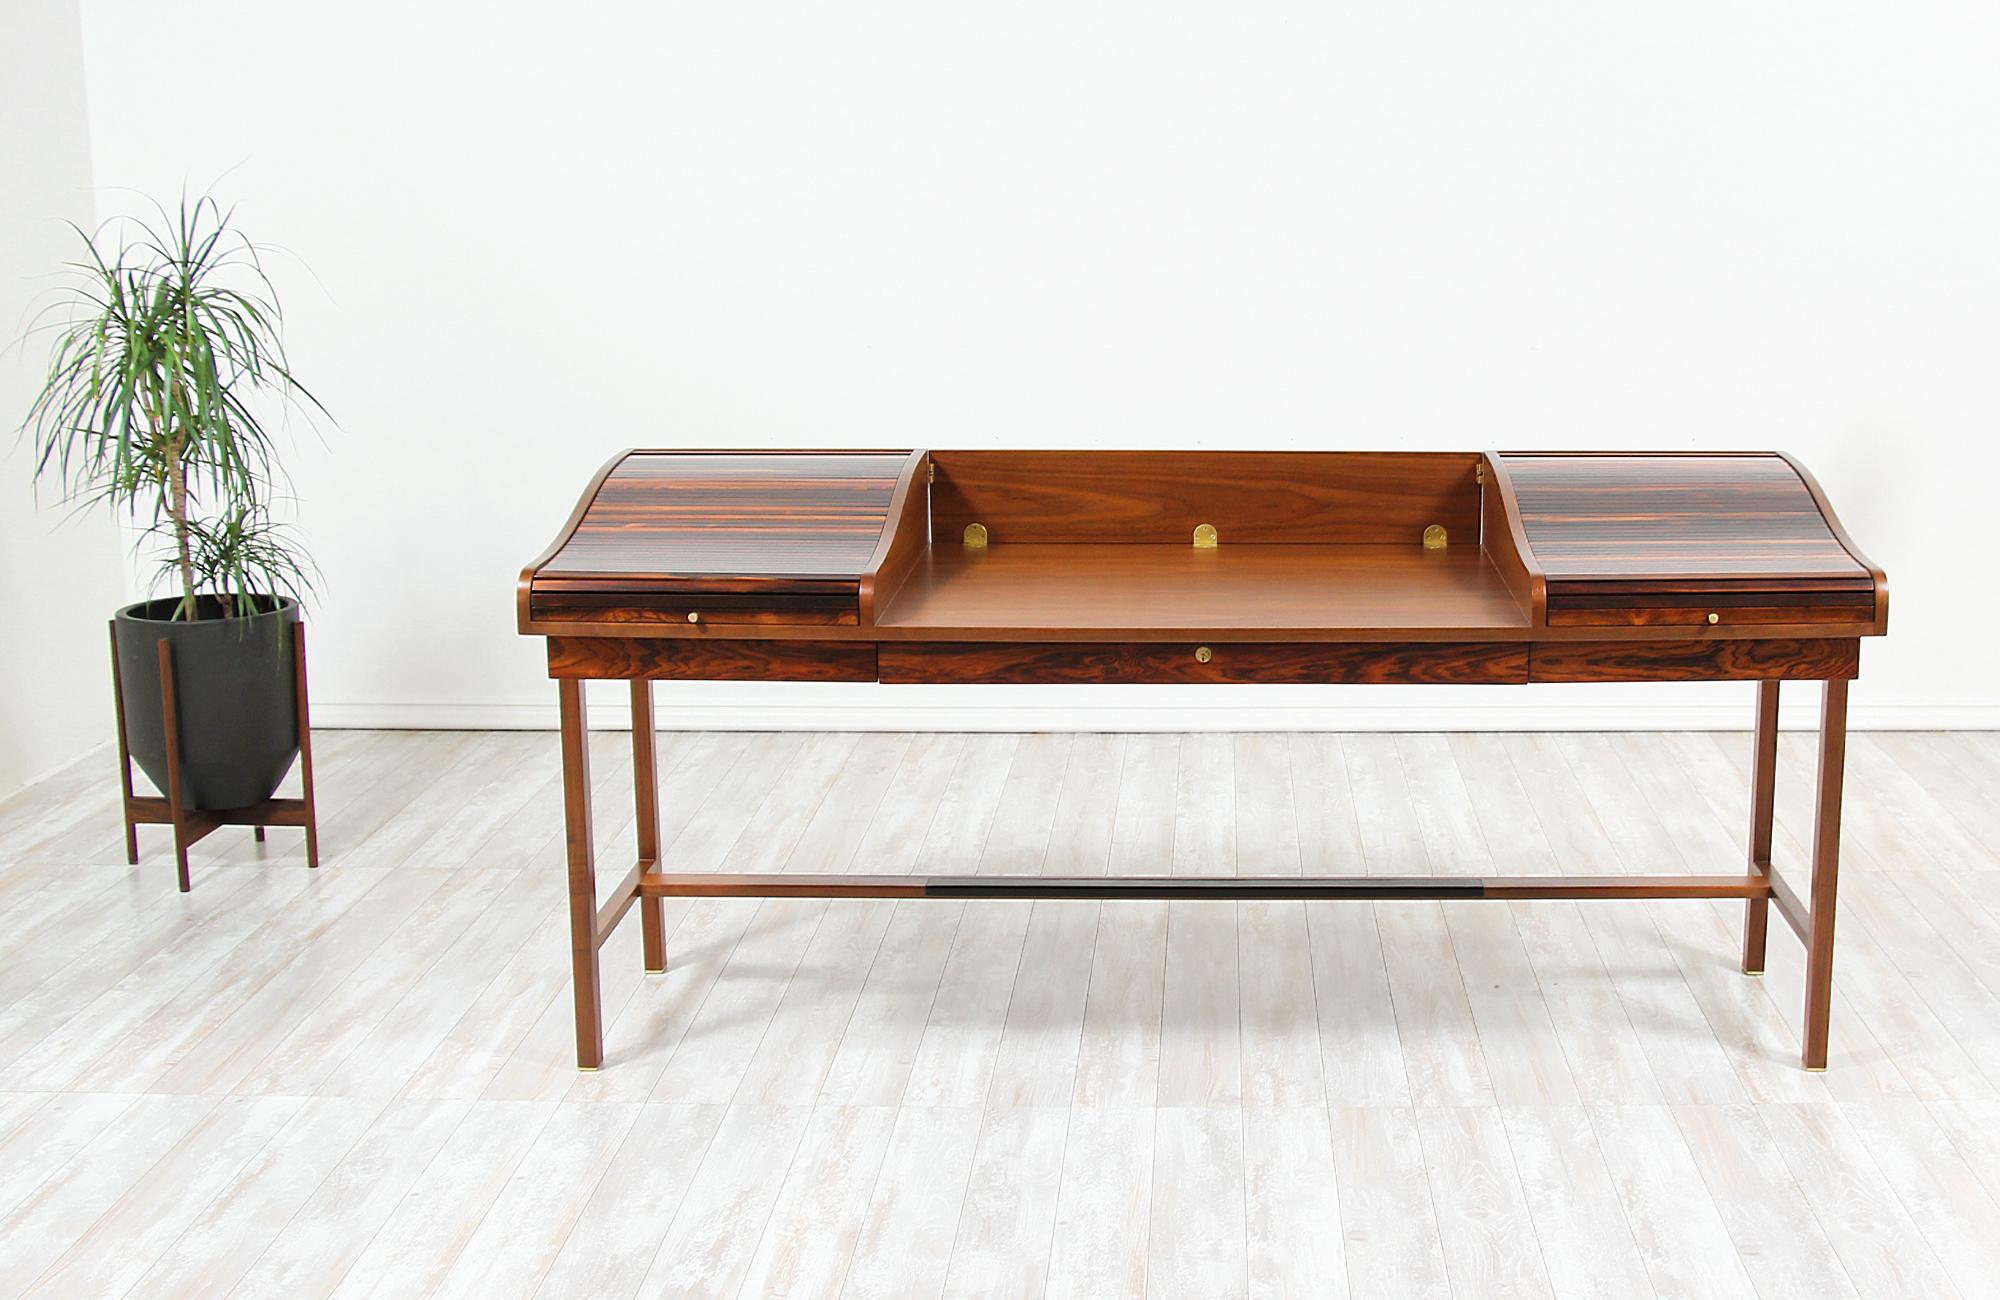 Eleganter Schreibtisch:: entworfen von Edward J. Wormley für Dunbar in den Vereinigten Staaten im Jahr 1957. Dieser fabelhafte moderne Chefschreibtisch Modell #452 verfügt über ein Gestell aus massivem Walnussholz und eine Schreibfläche mit einer